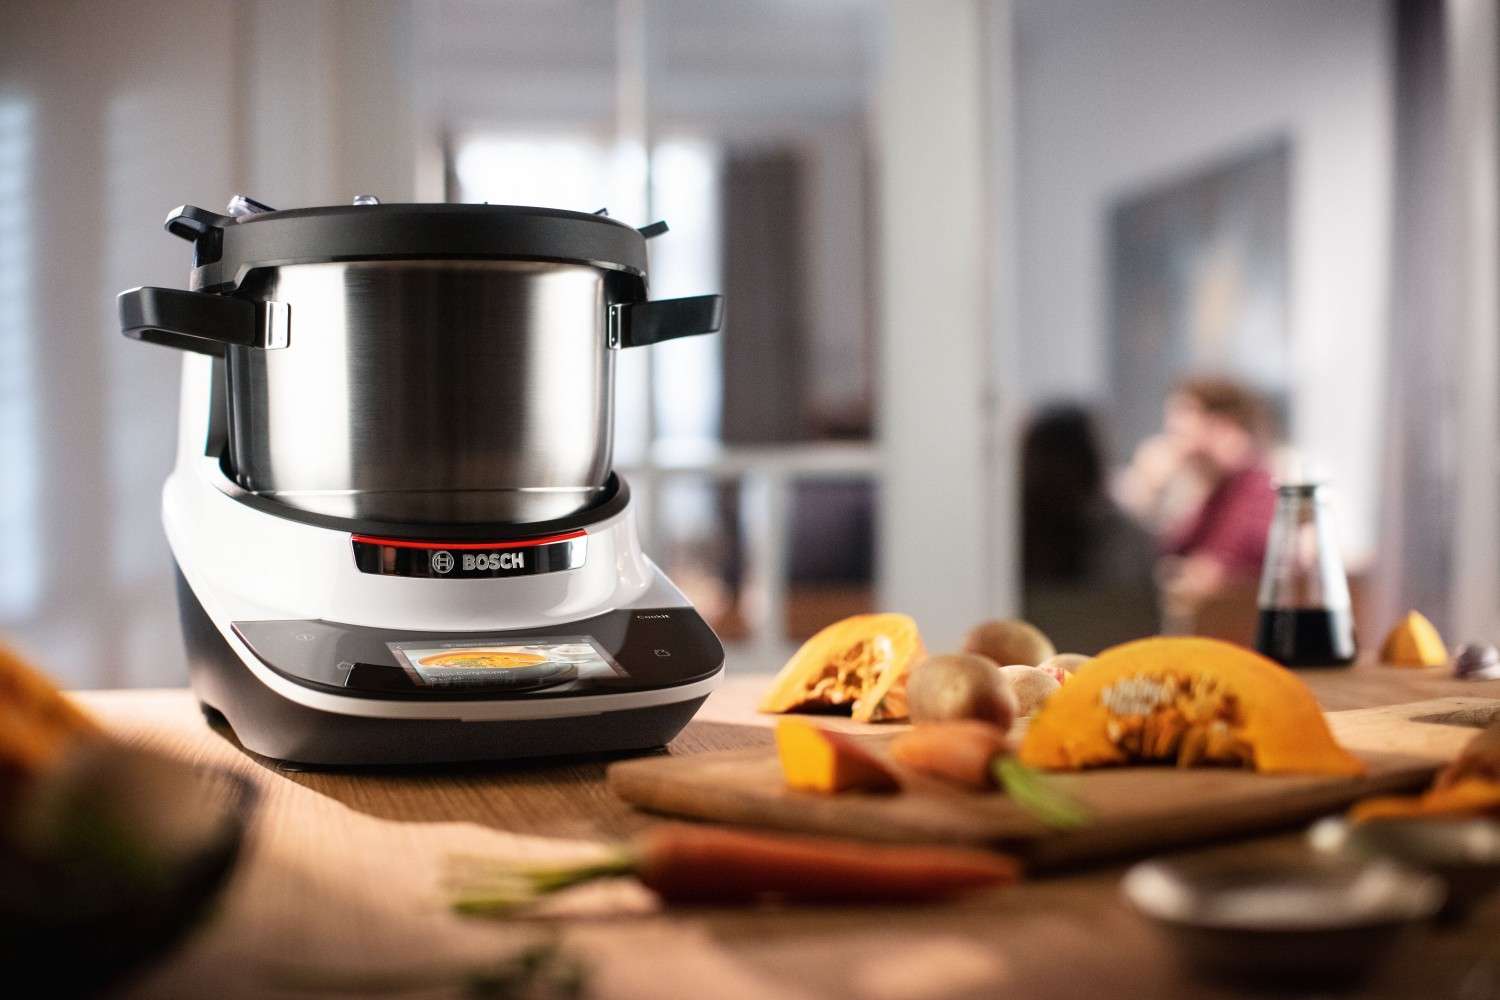 Der Bosch "Cookit" ist eine Küchenmaschine mit Kochfunktion, die vor allem jungen Familien im Alltag stressfrei ermöglicht, jeden Tag frische Gerichte zu kochen.